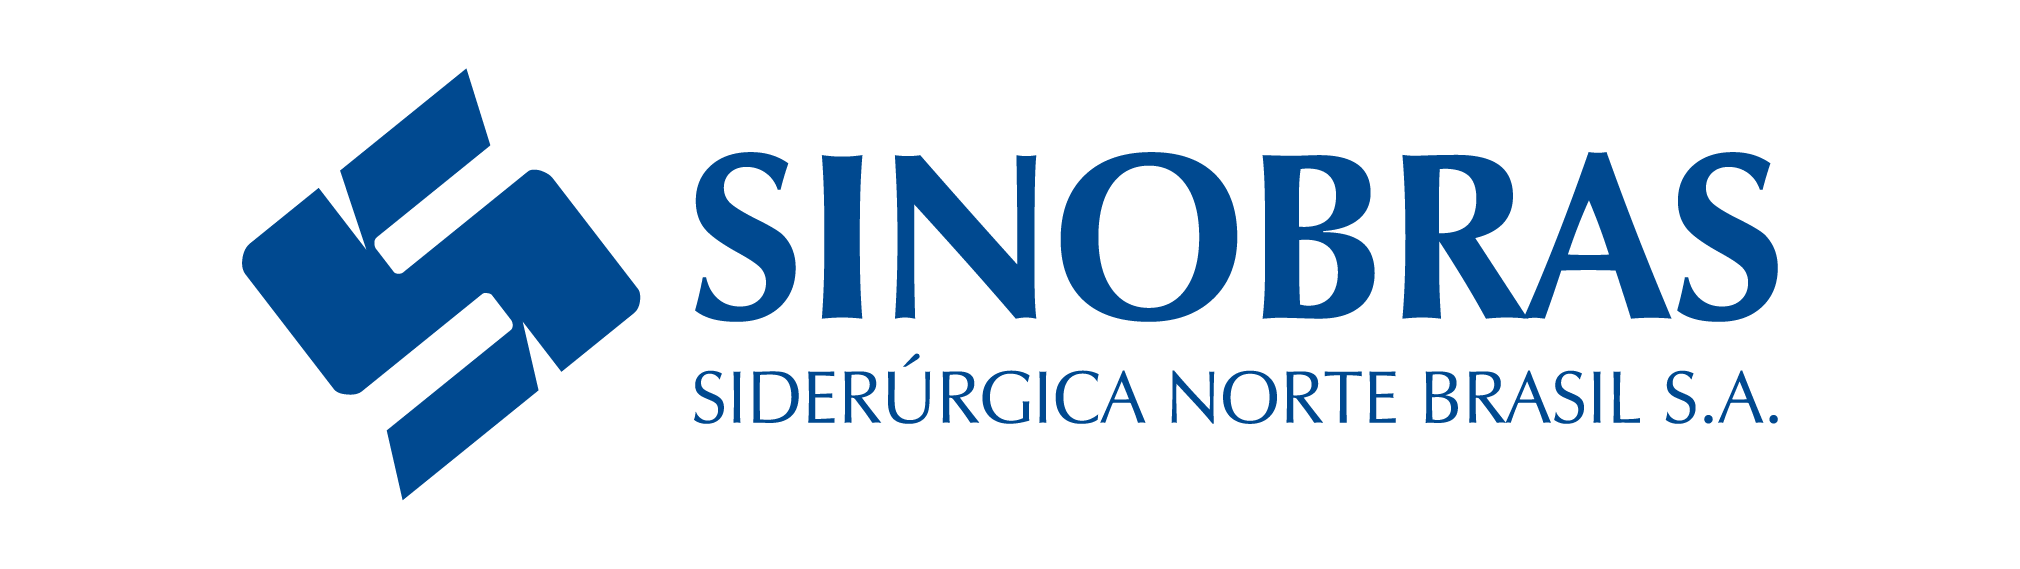 SINOBRAS logo_1